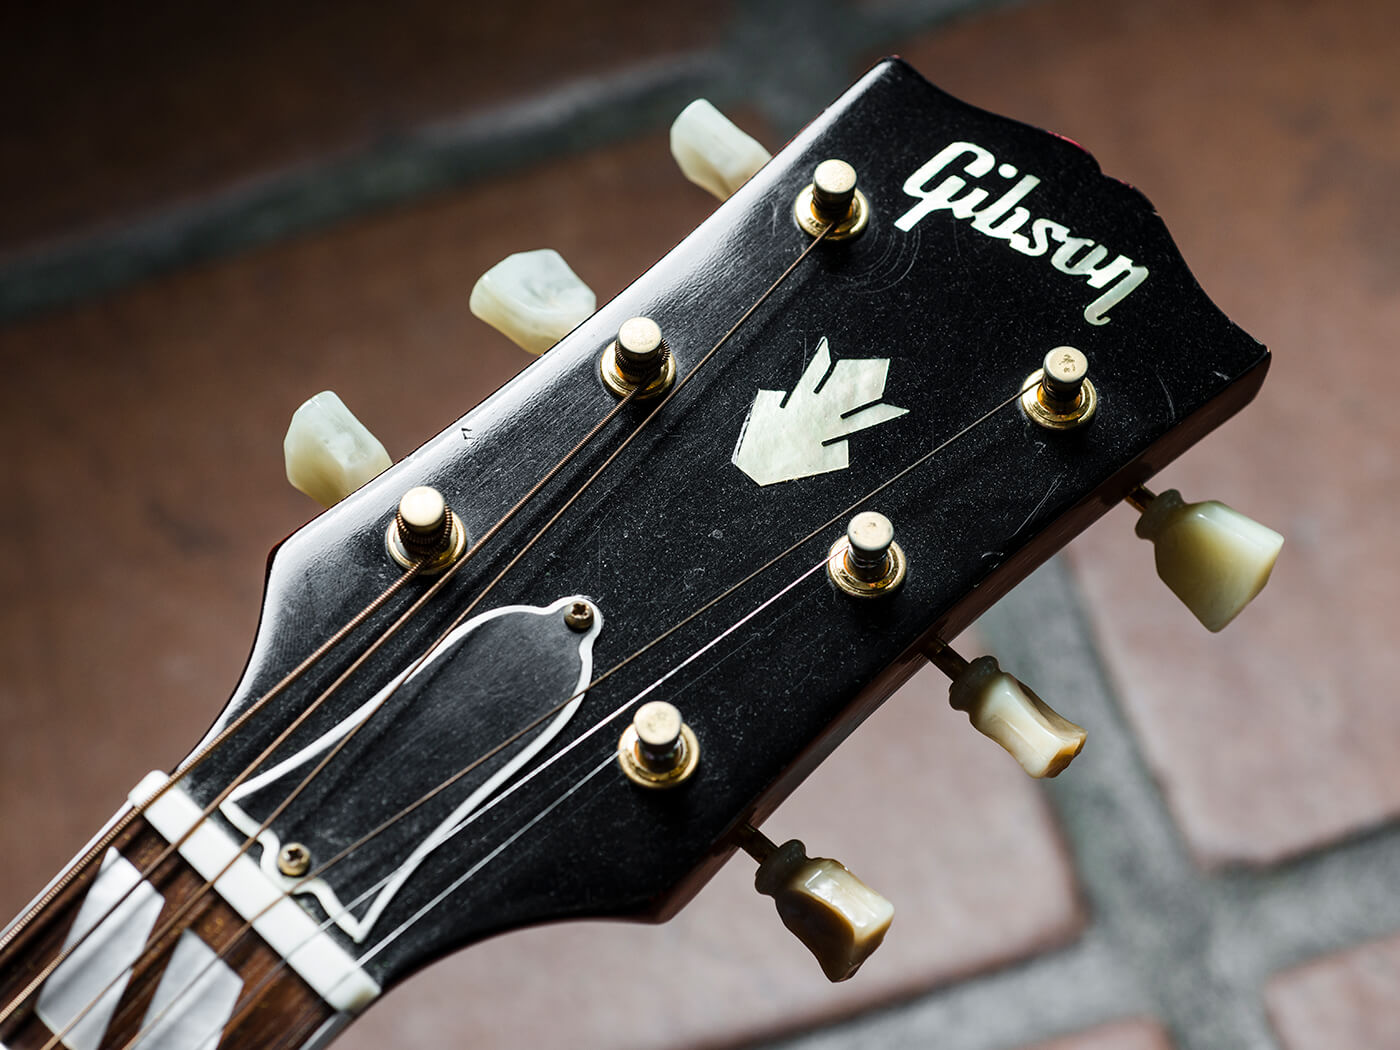 Brian Ray's 1963 Gibson ‘Hummingdove’